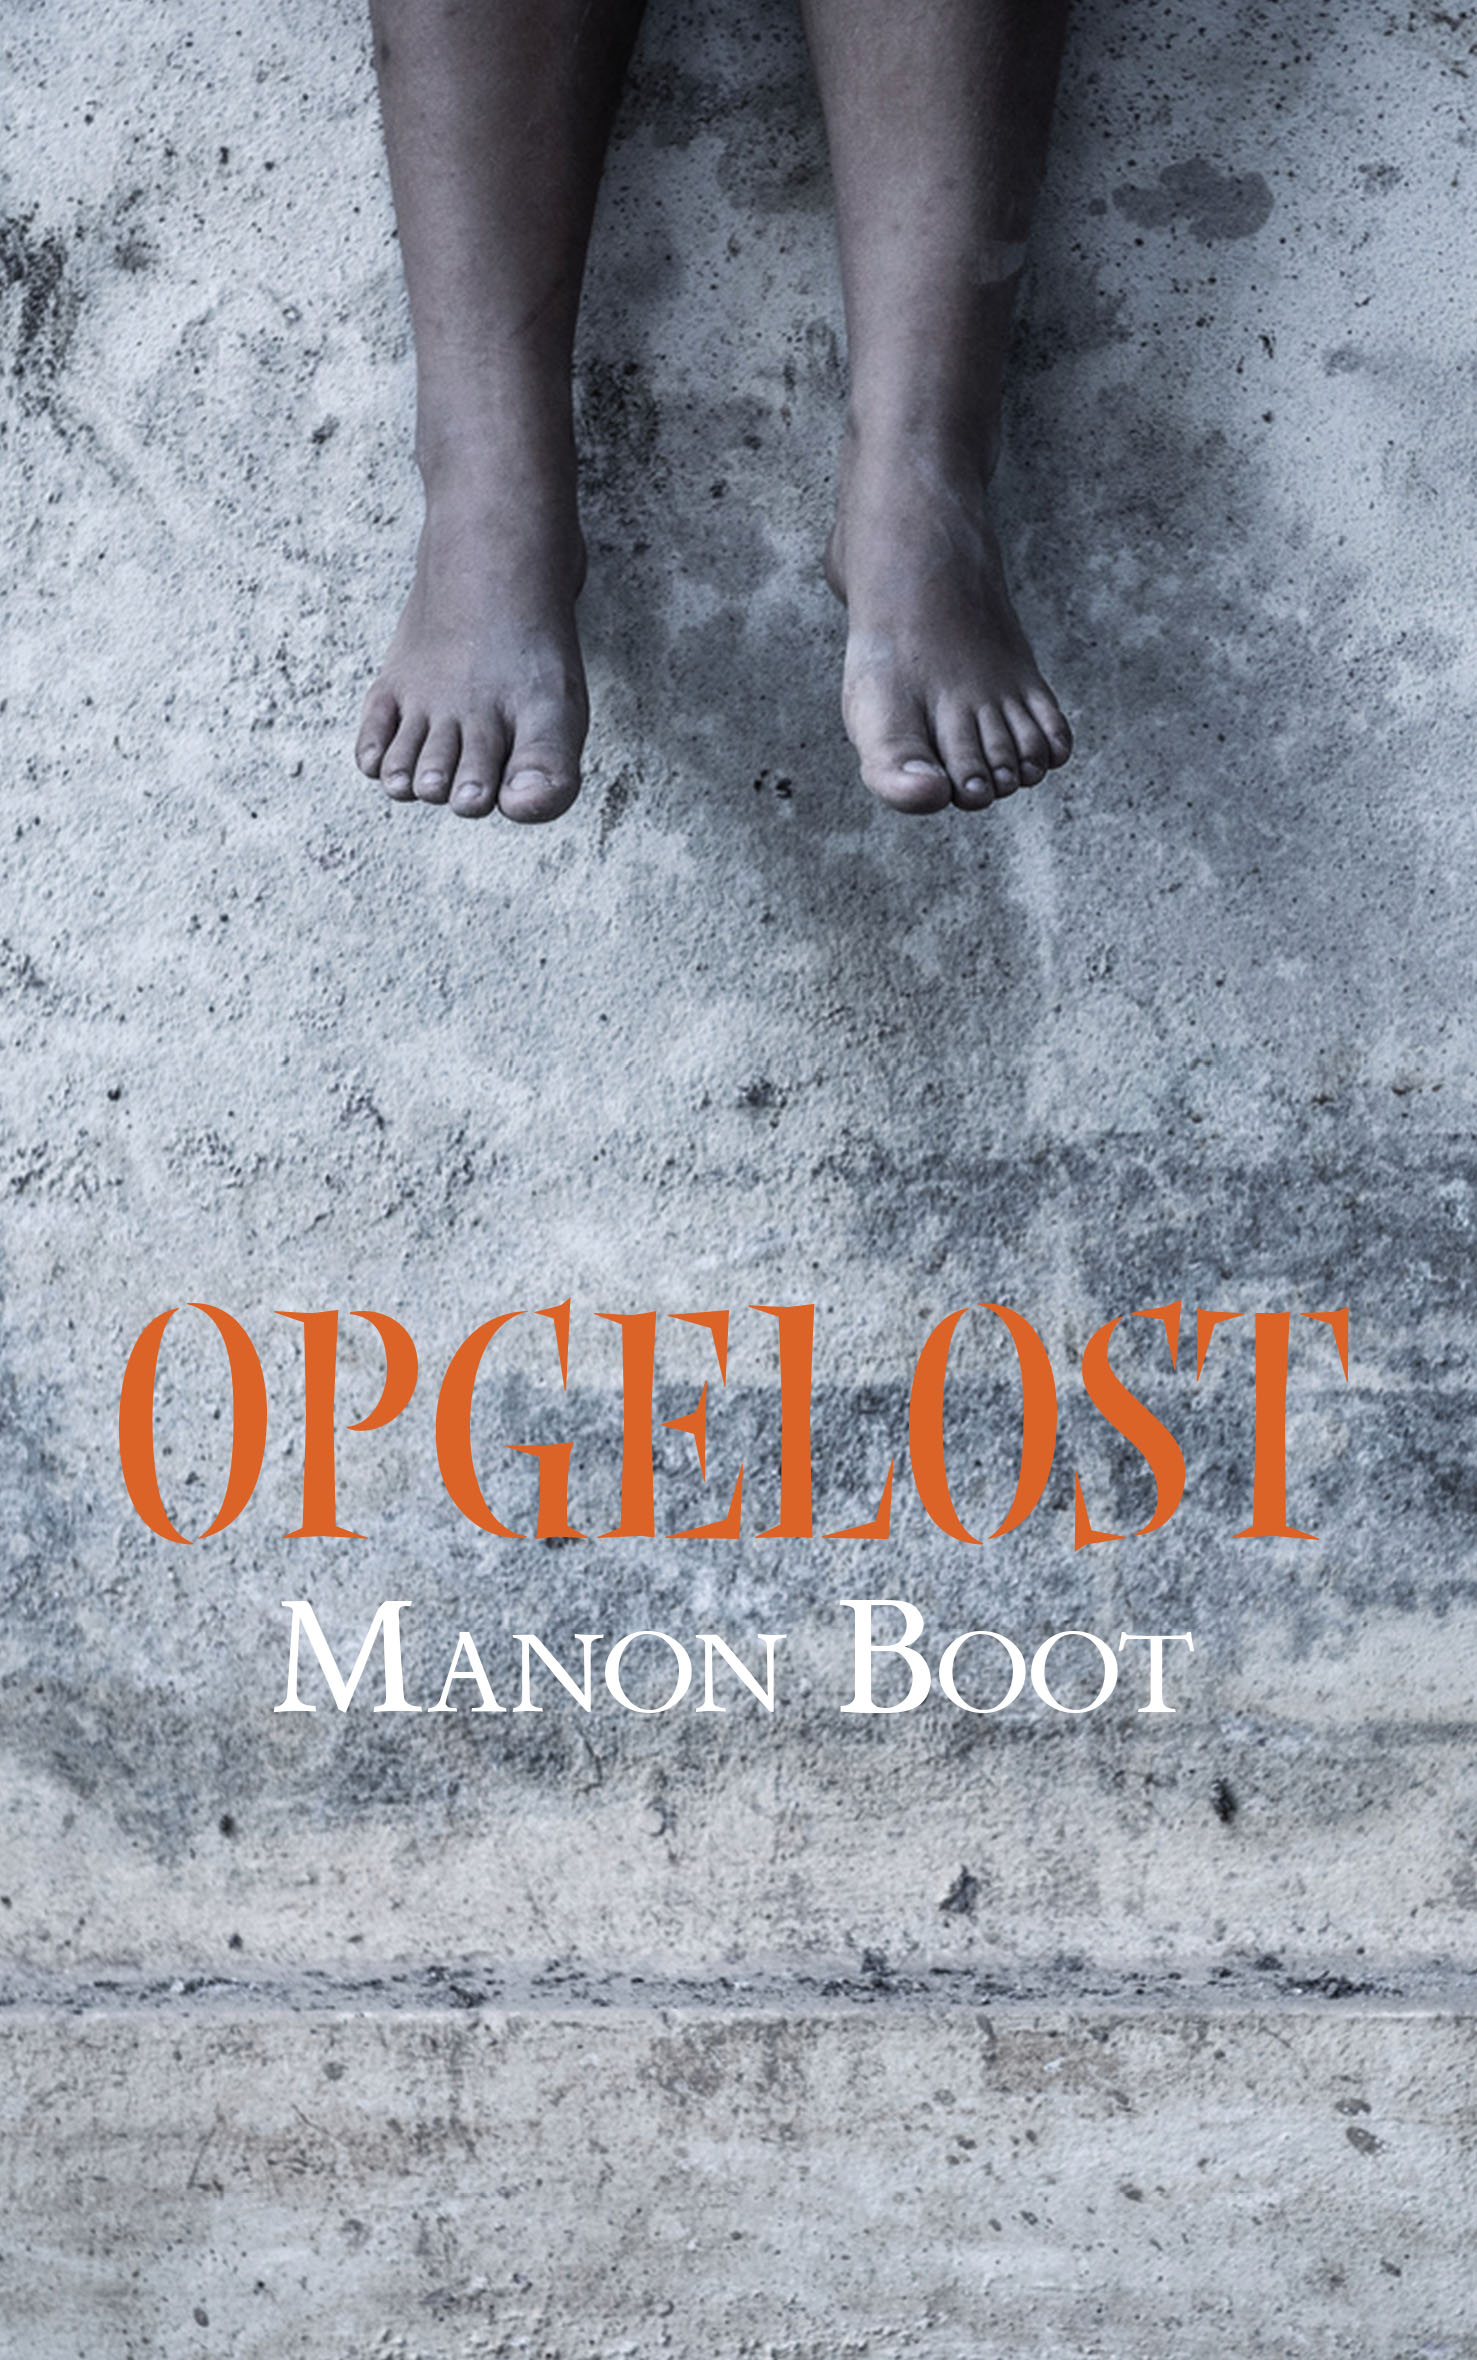 Webwinkel Boekscout.nl: Manon Boot - Opgelost